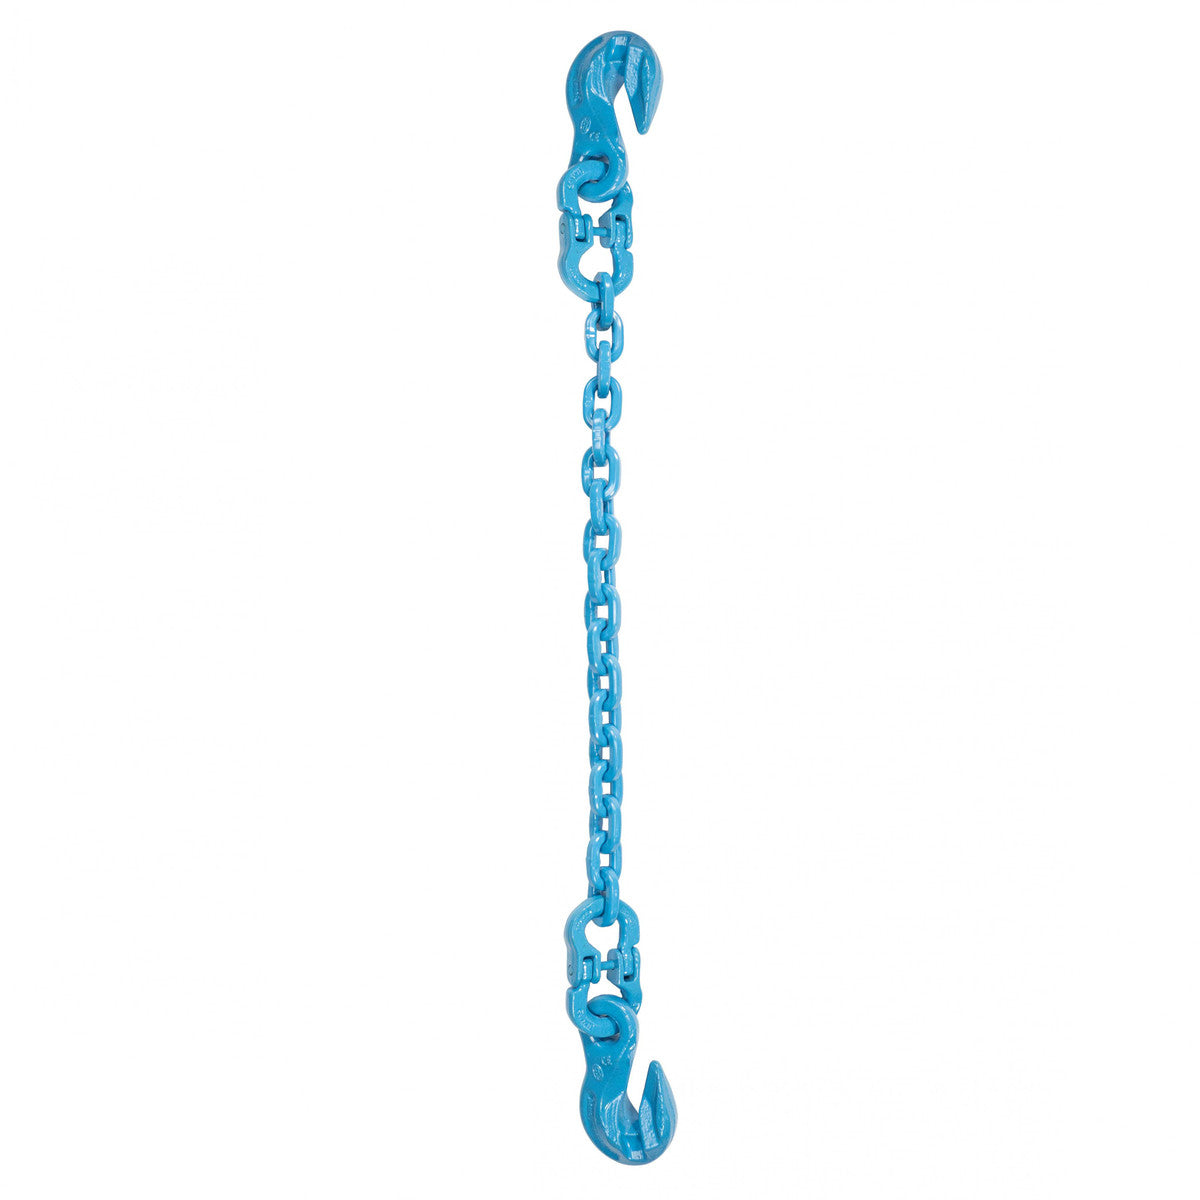 1/2" x 18' - Pewag Single Leg Chain Sling w/ Grab & Grab Hooks - Grade 120